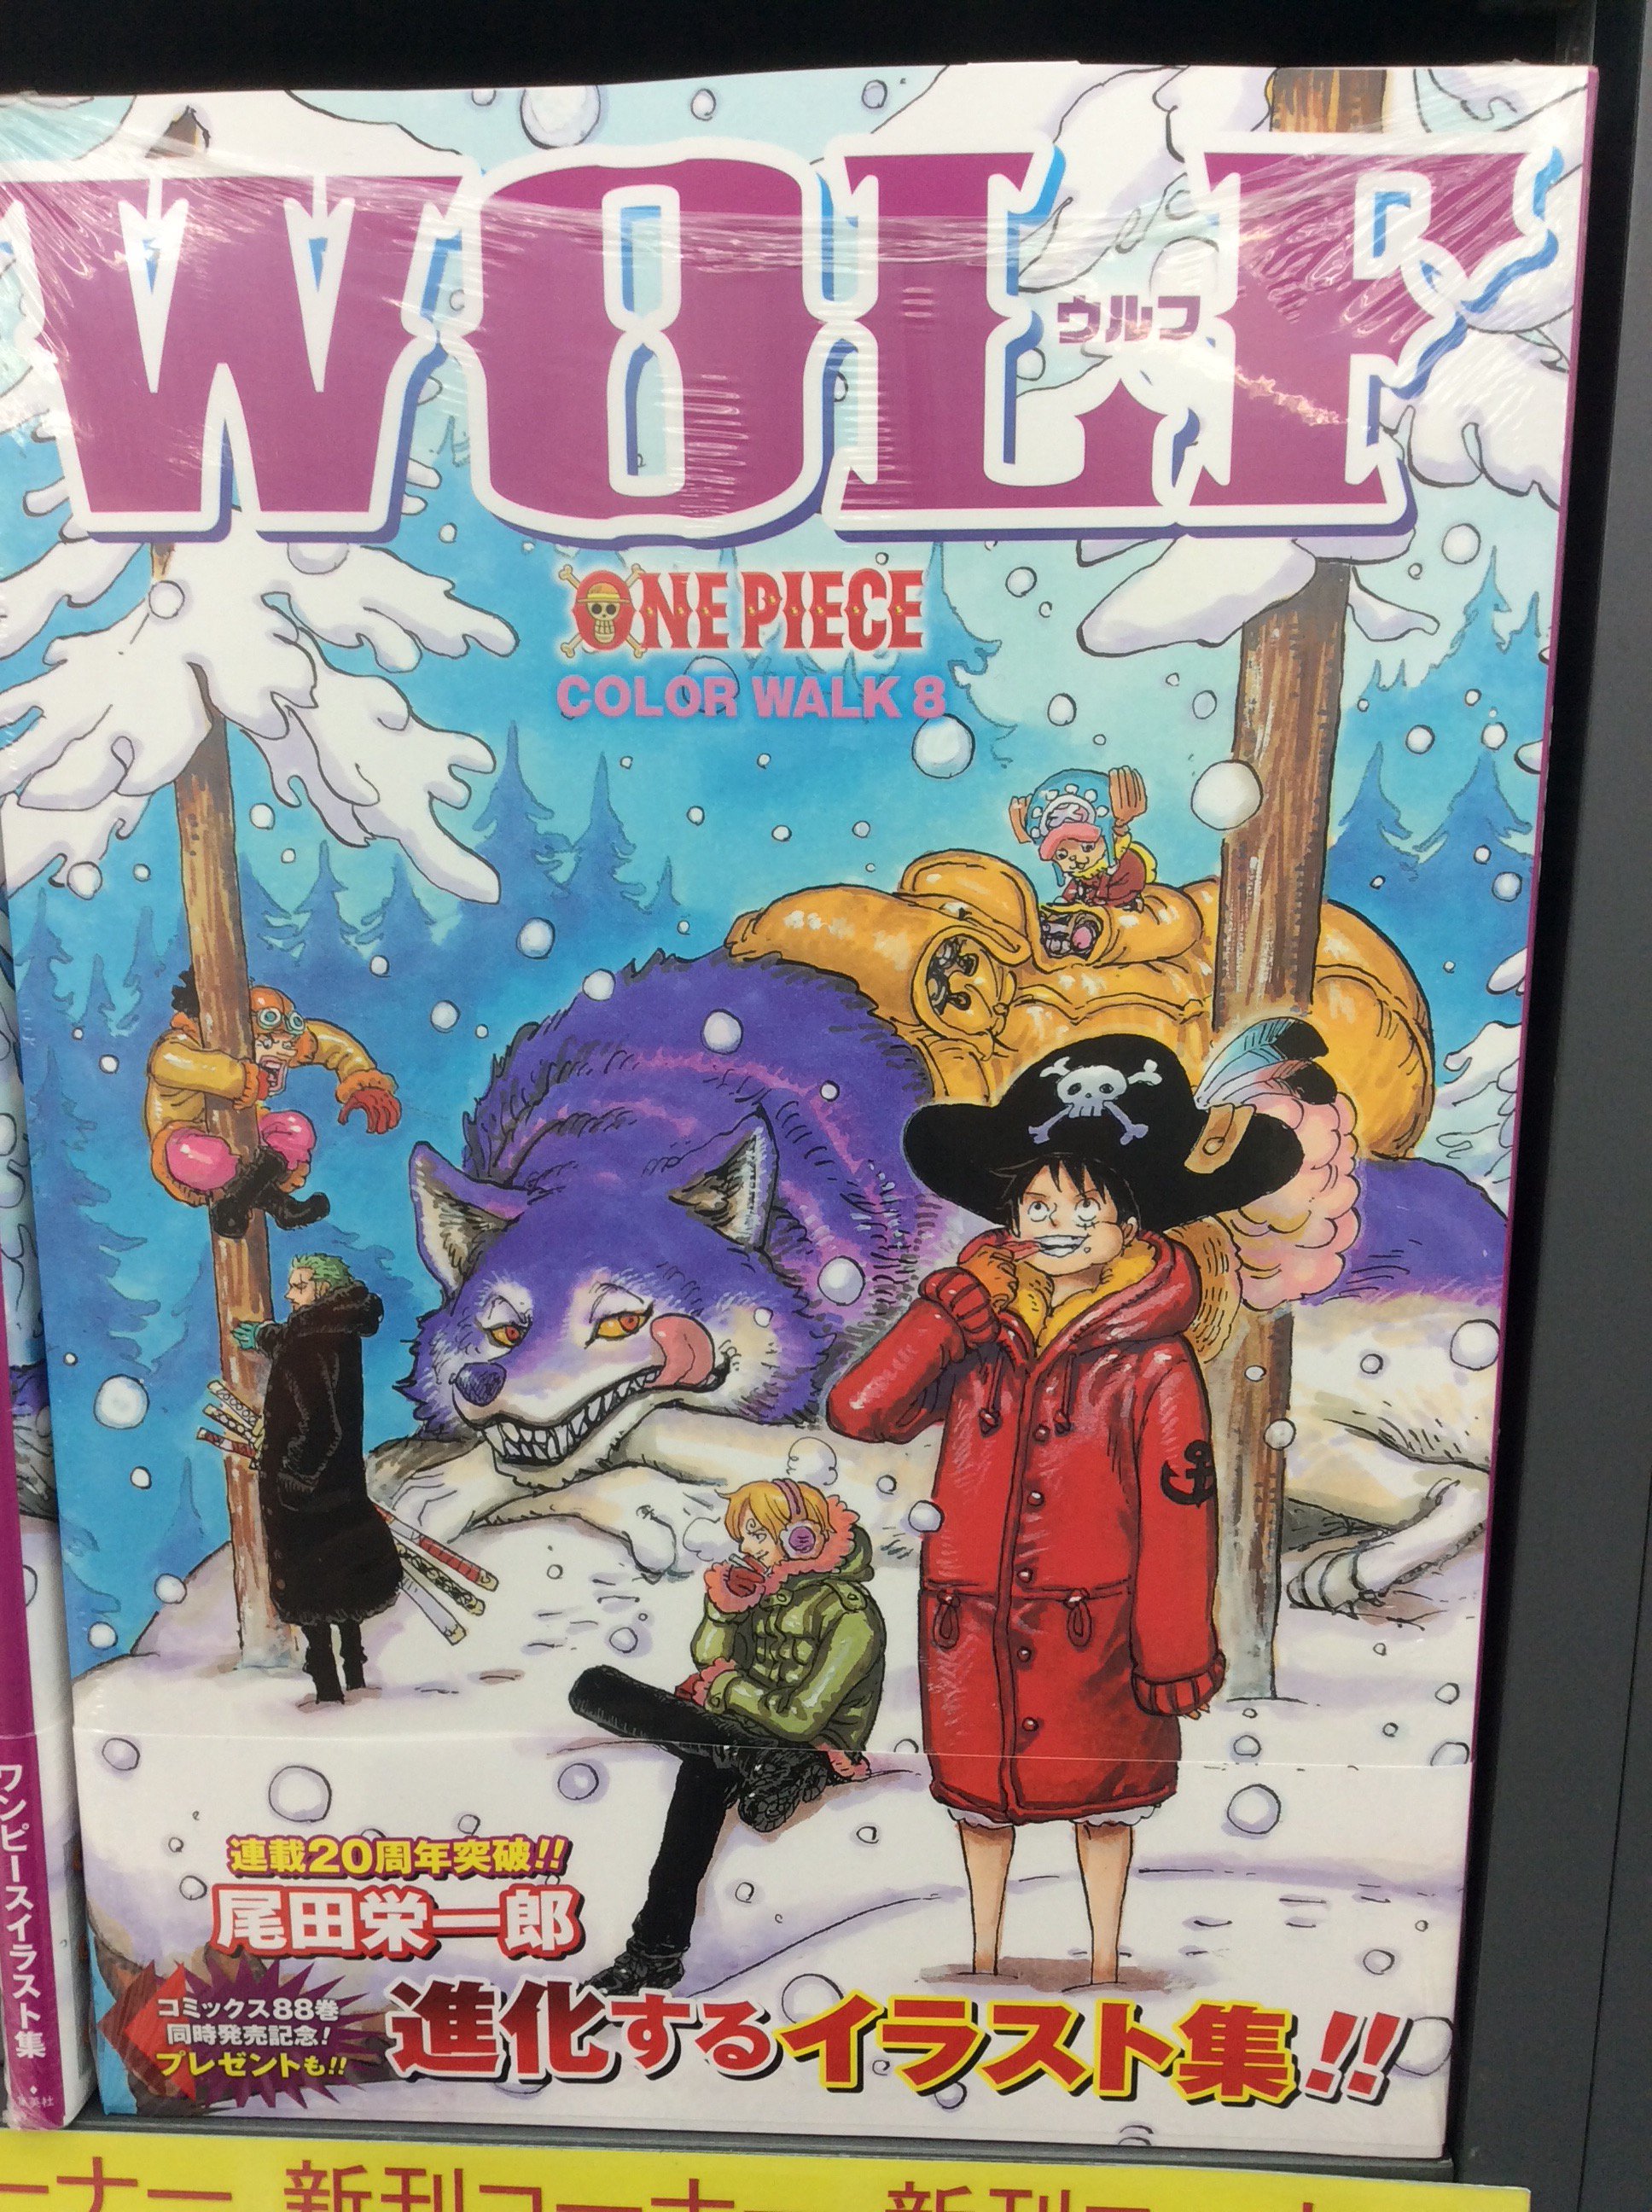 アニメイト秋葉原本館 画集新刊情報 One Piece Picture Book 光と闇と ルフィとエースとサボ の物語 One Piece ワンピース イラスト画集 Color Walk 8 Wolf 入荷致しました 発売中コミック最新刊 One Piece ワンピース と合わせてお